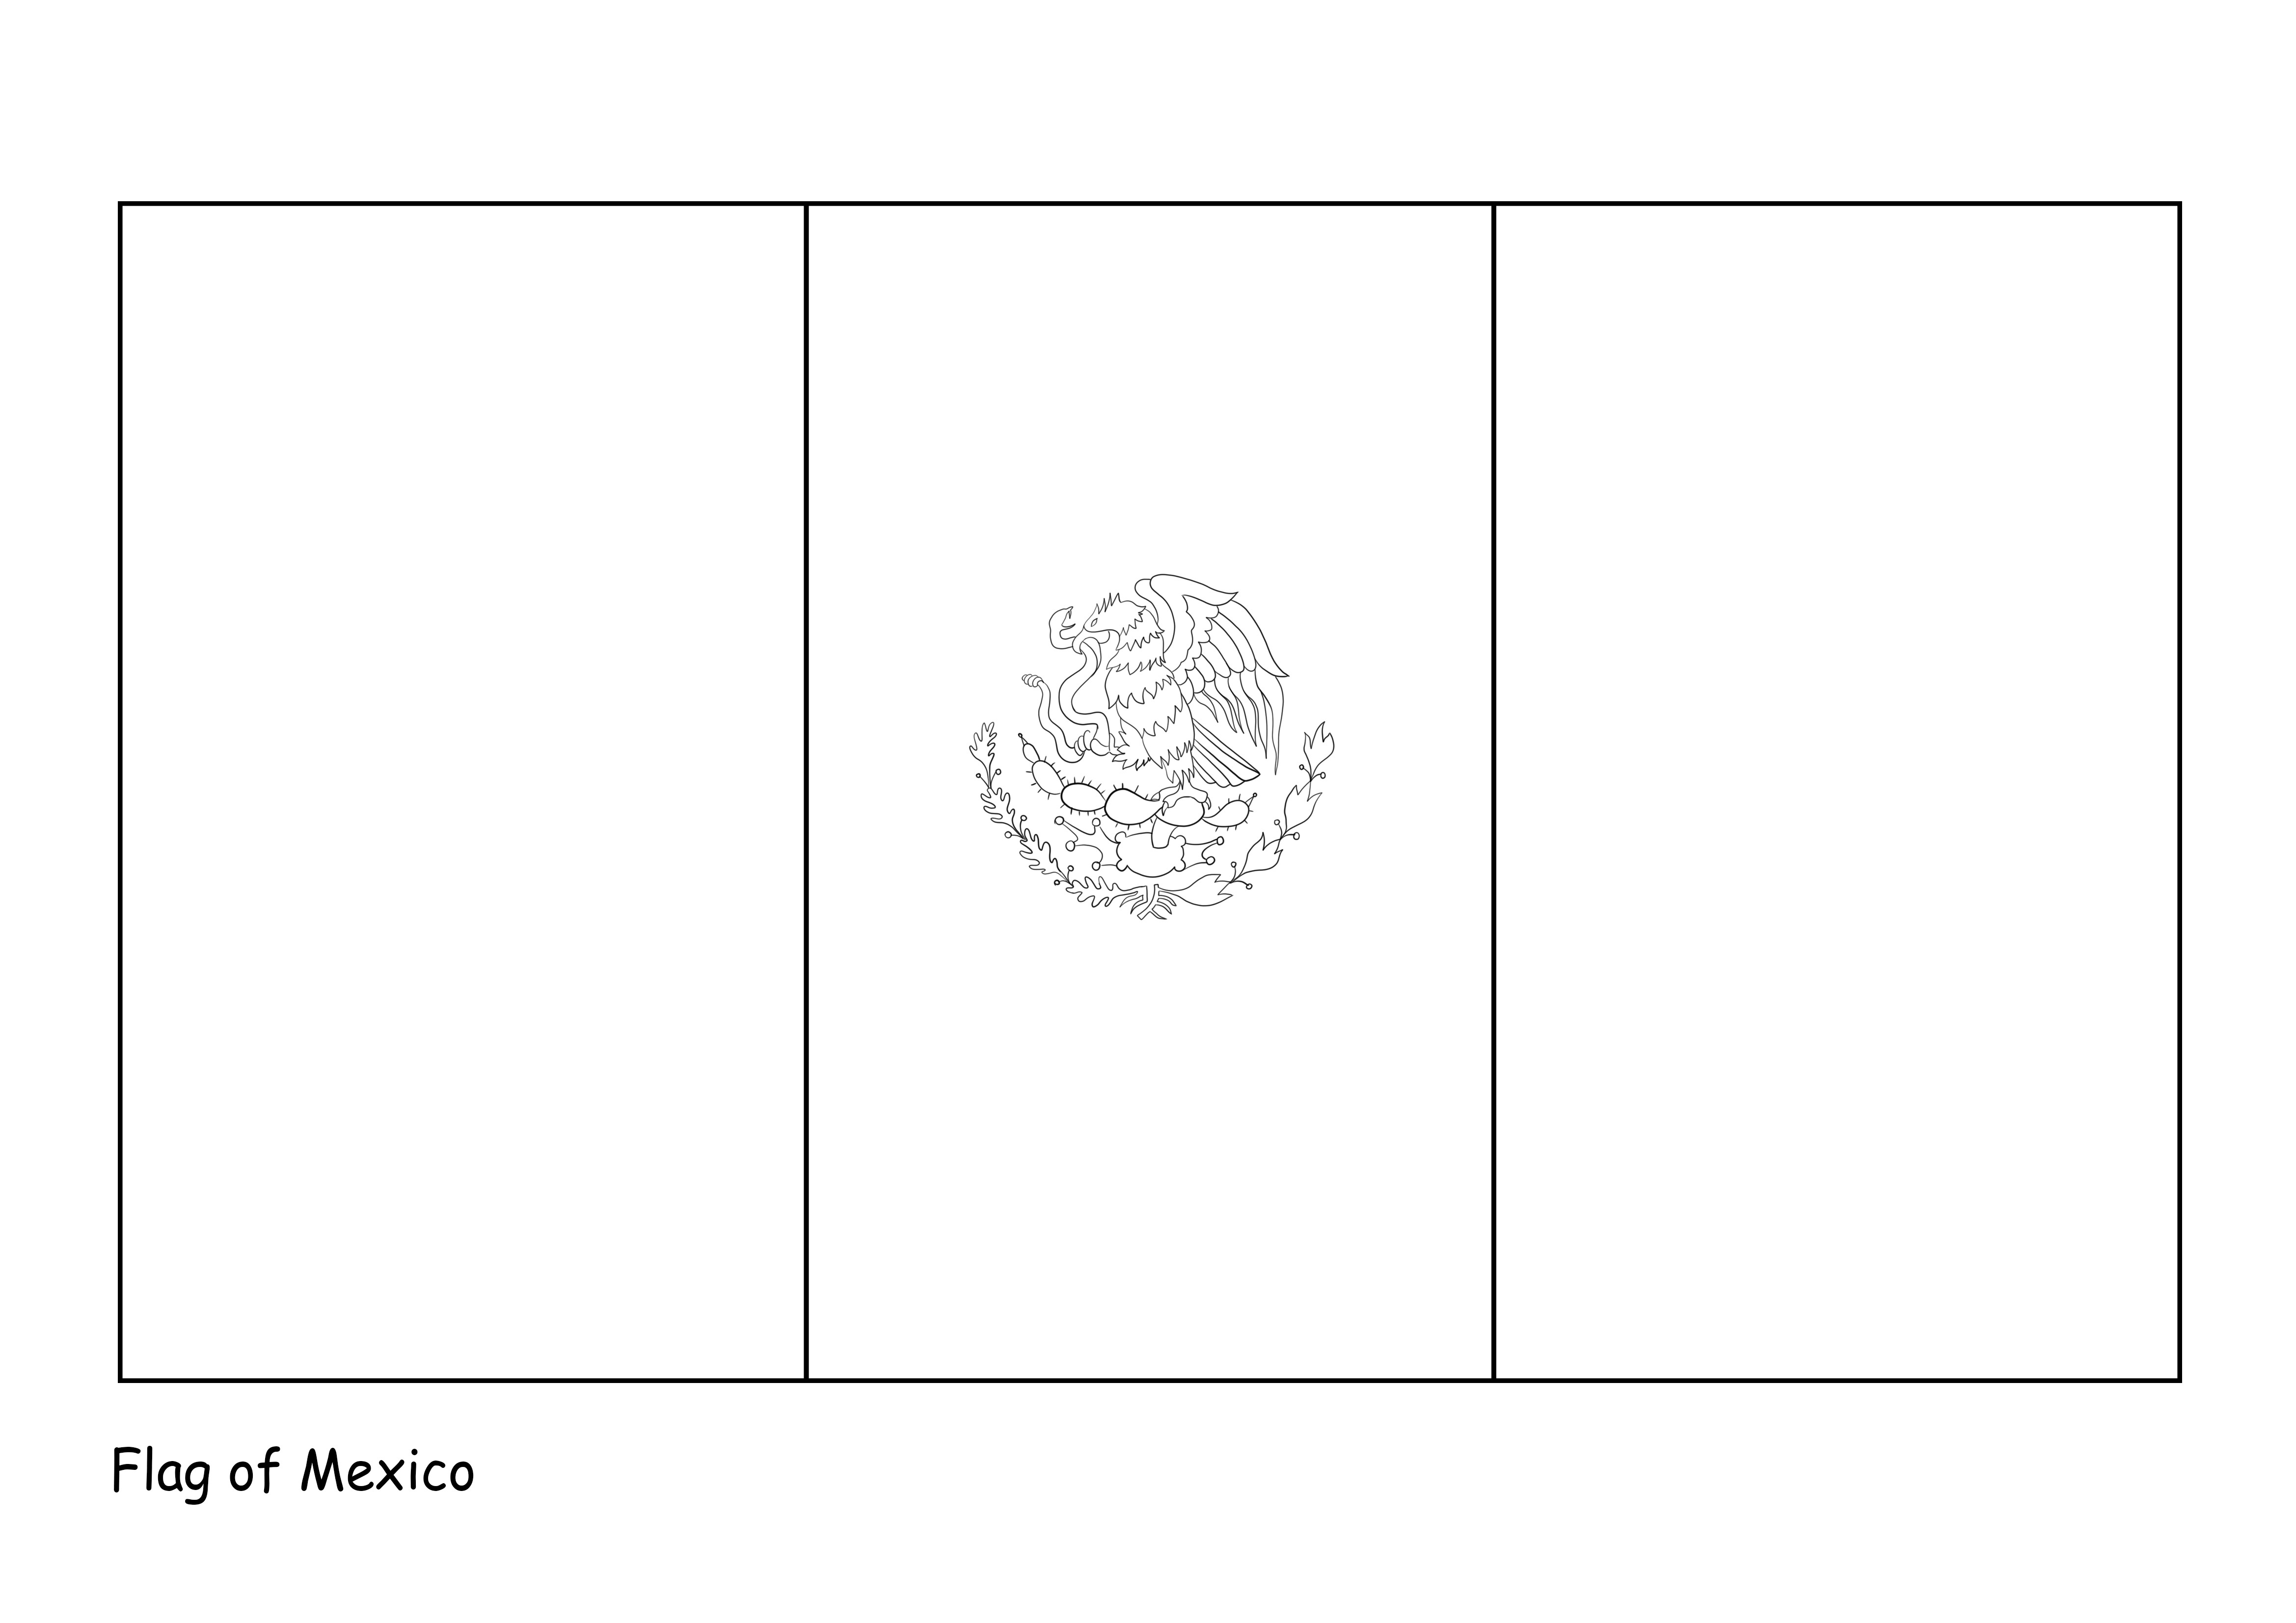 Bandera de México para descargar o imprimir gratis imagen